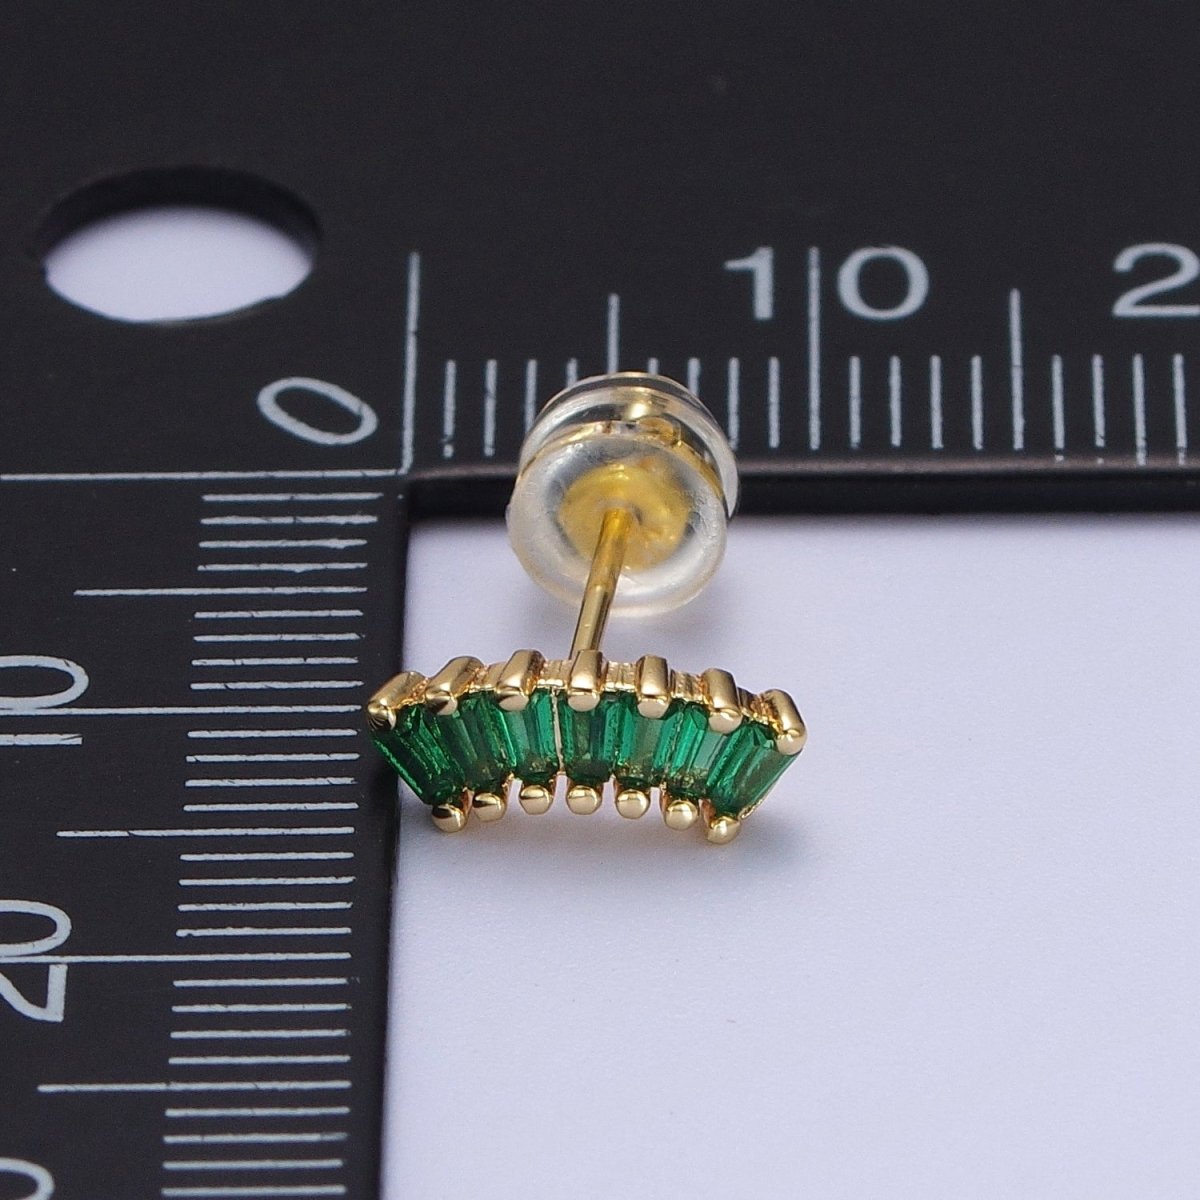 24K Gold Filled Green Baguette Cubic Zirconia Stud Earrings | Y-100 - DLUXCA